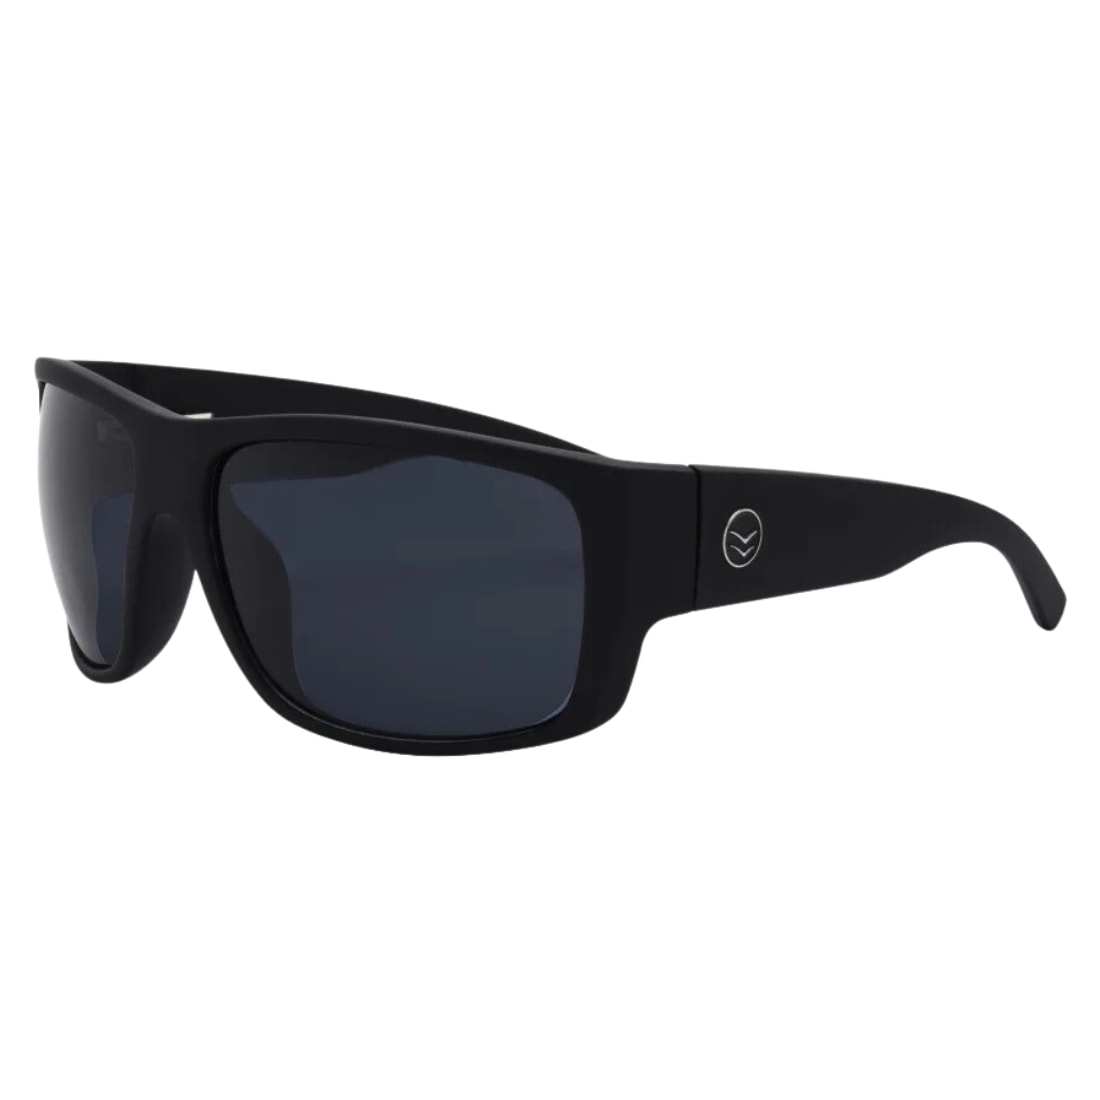 I-Sea Captain Wrap Around Polarised Sunglasses - Black/Smoke Polarized Lens - Wrap Around Sunglasses by I-Sea